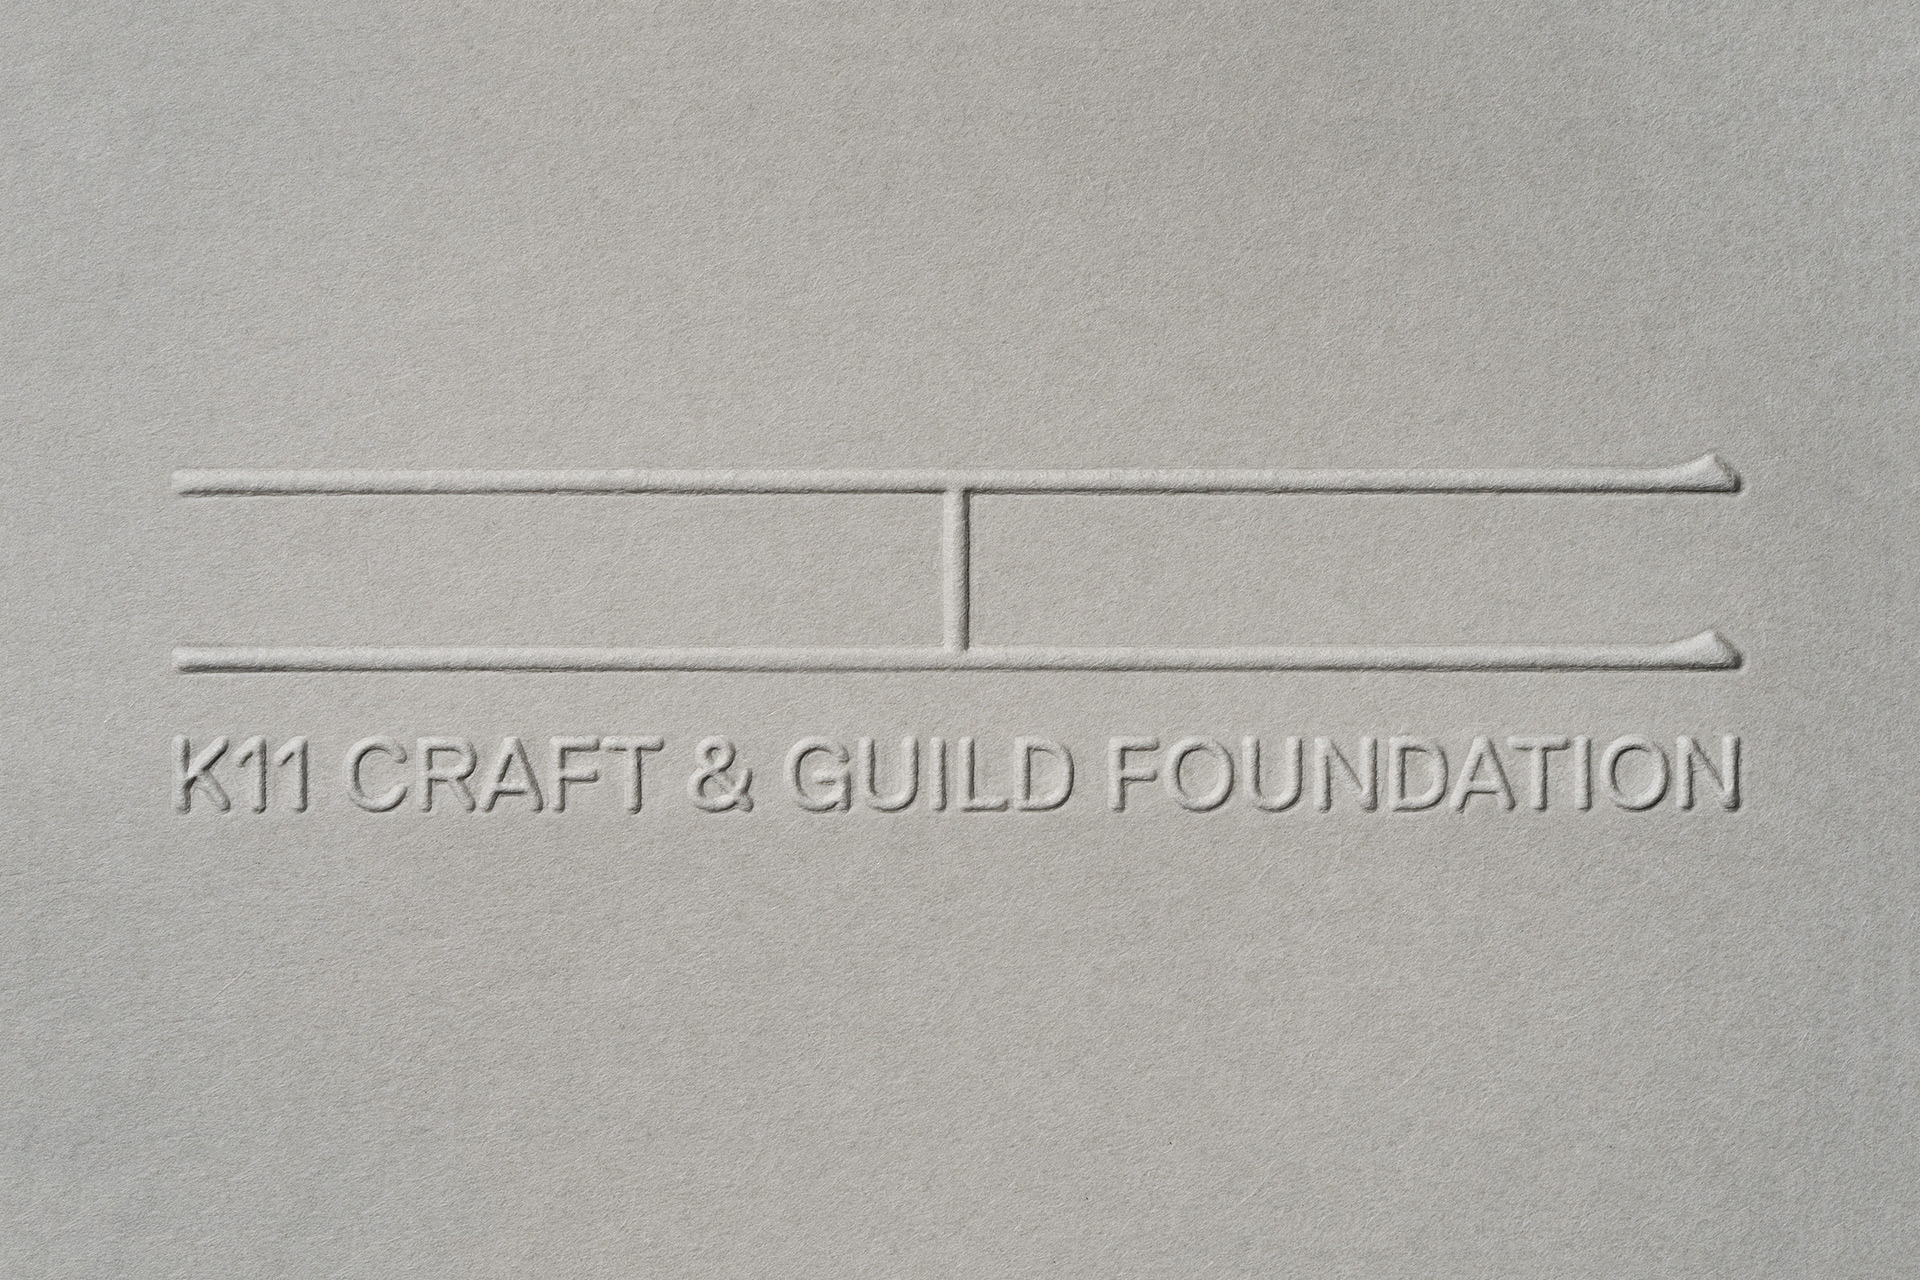 mejores-logos-2021-2022-k11-craft-guild-foundation-0101